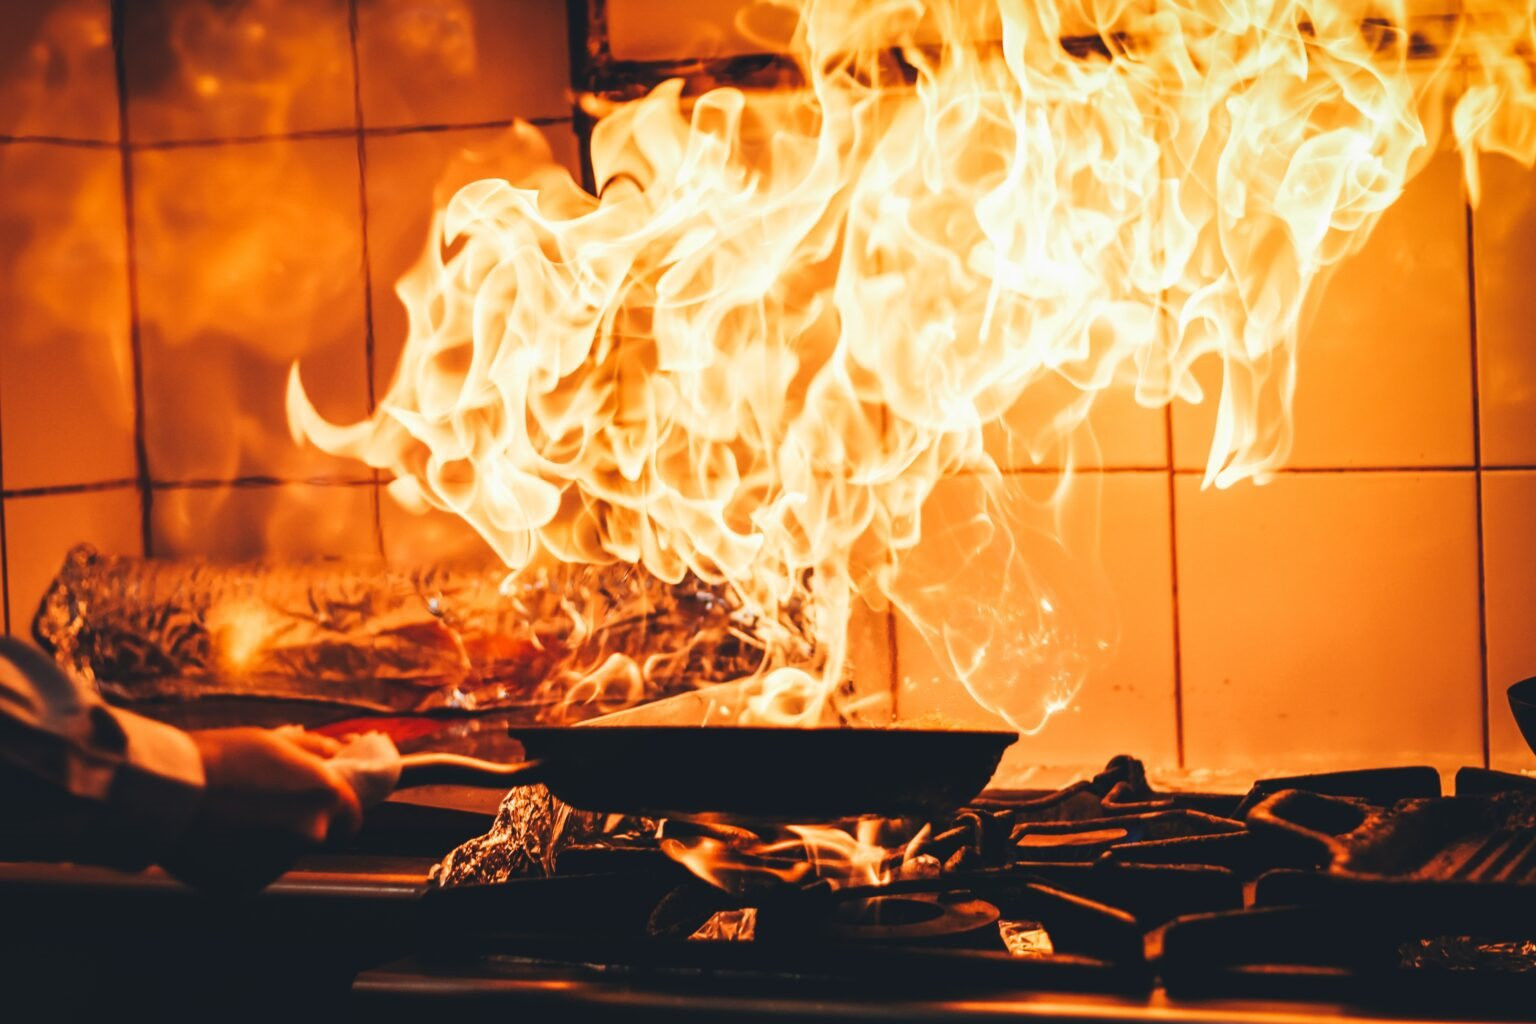 6 việc gần như ai cũng làm trong bếp nhưng lại cực kì nguy hiểm, có thể gây cháy nổ- Ảnh 2.